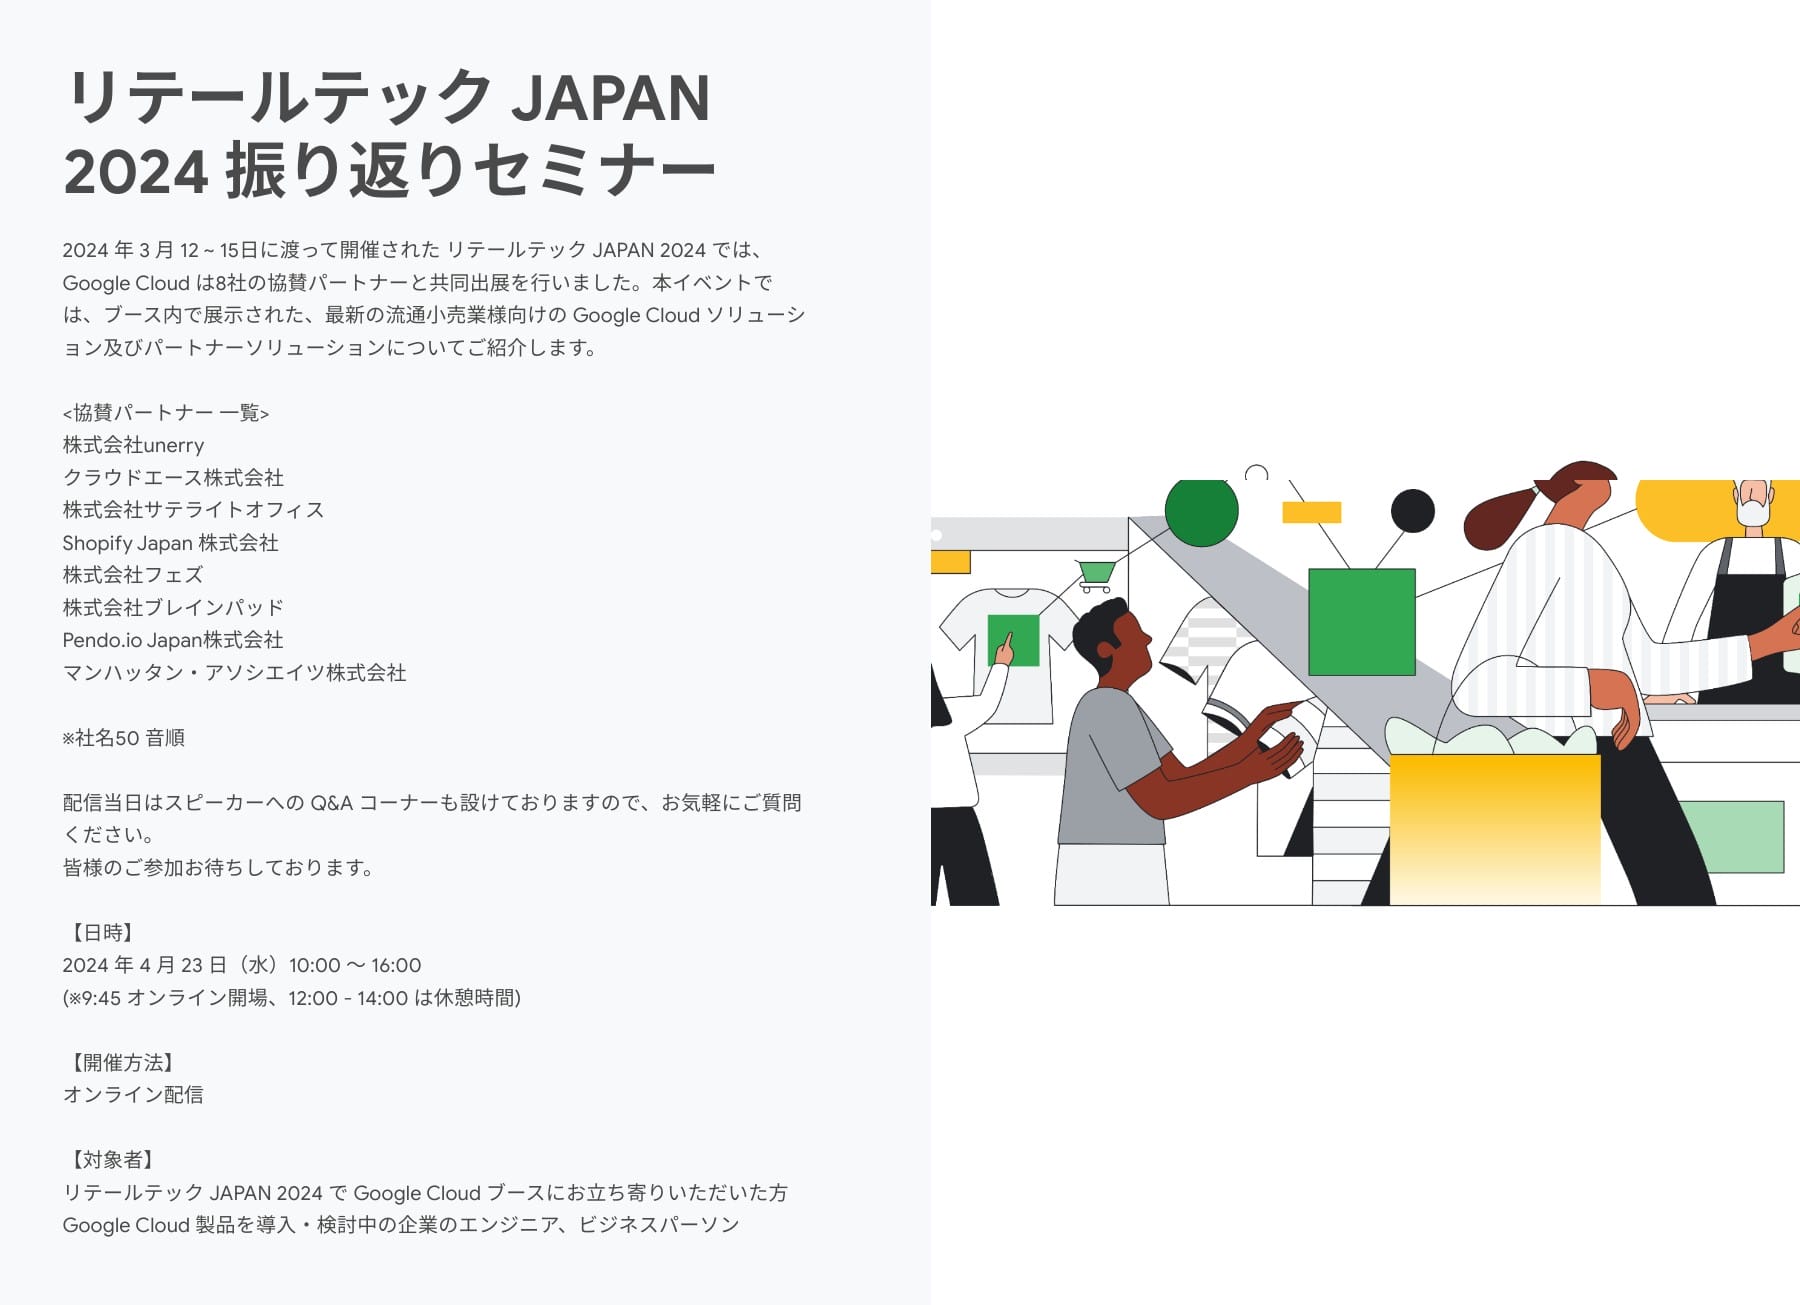 [Google Cloud] リテールテック JAPAN 2024 振り返りセミナー